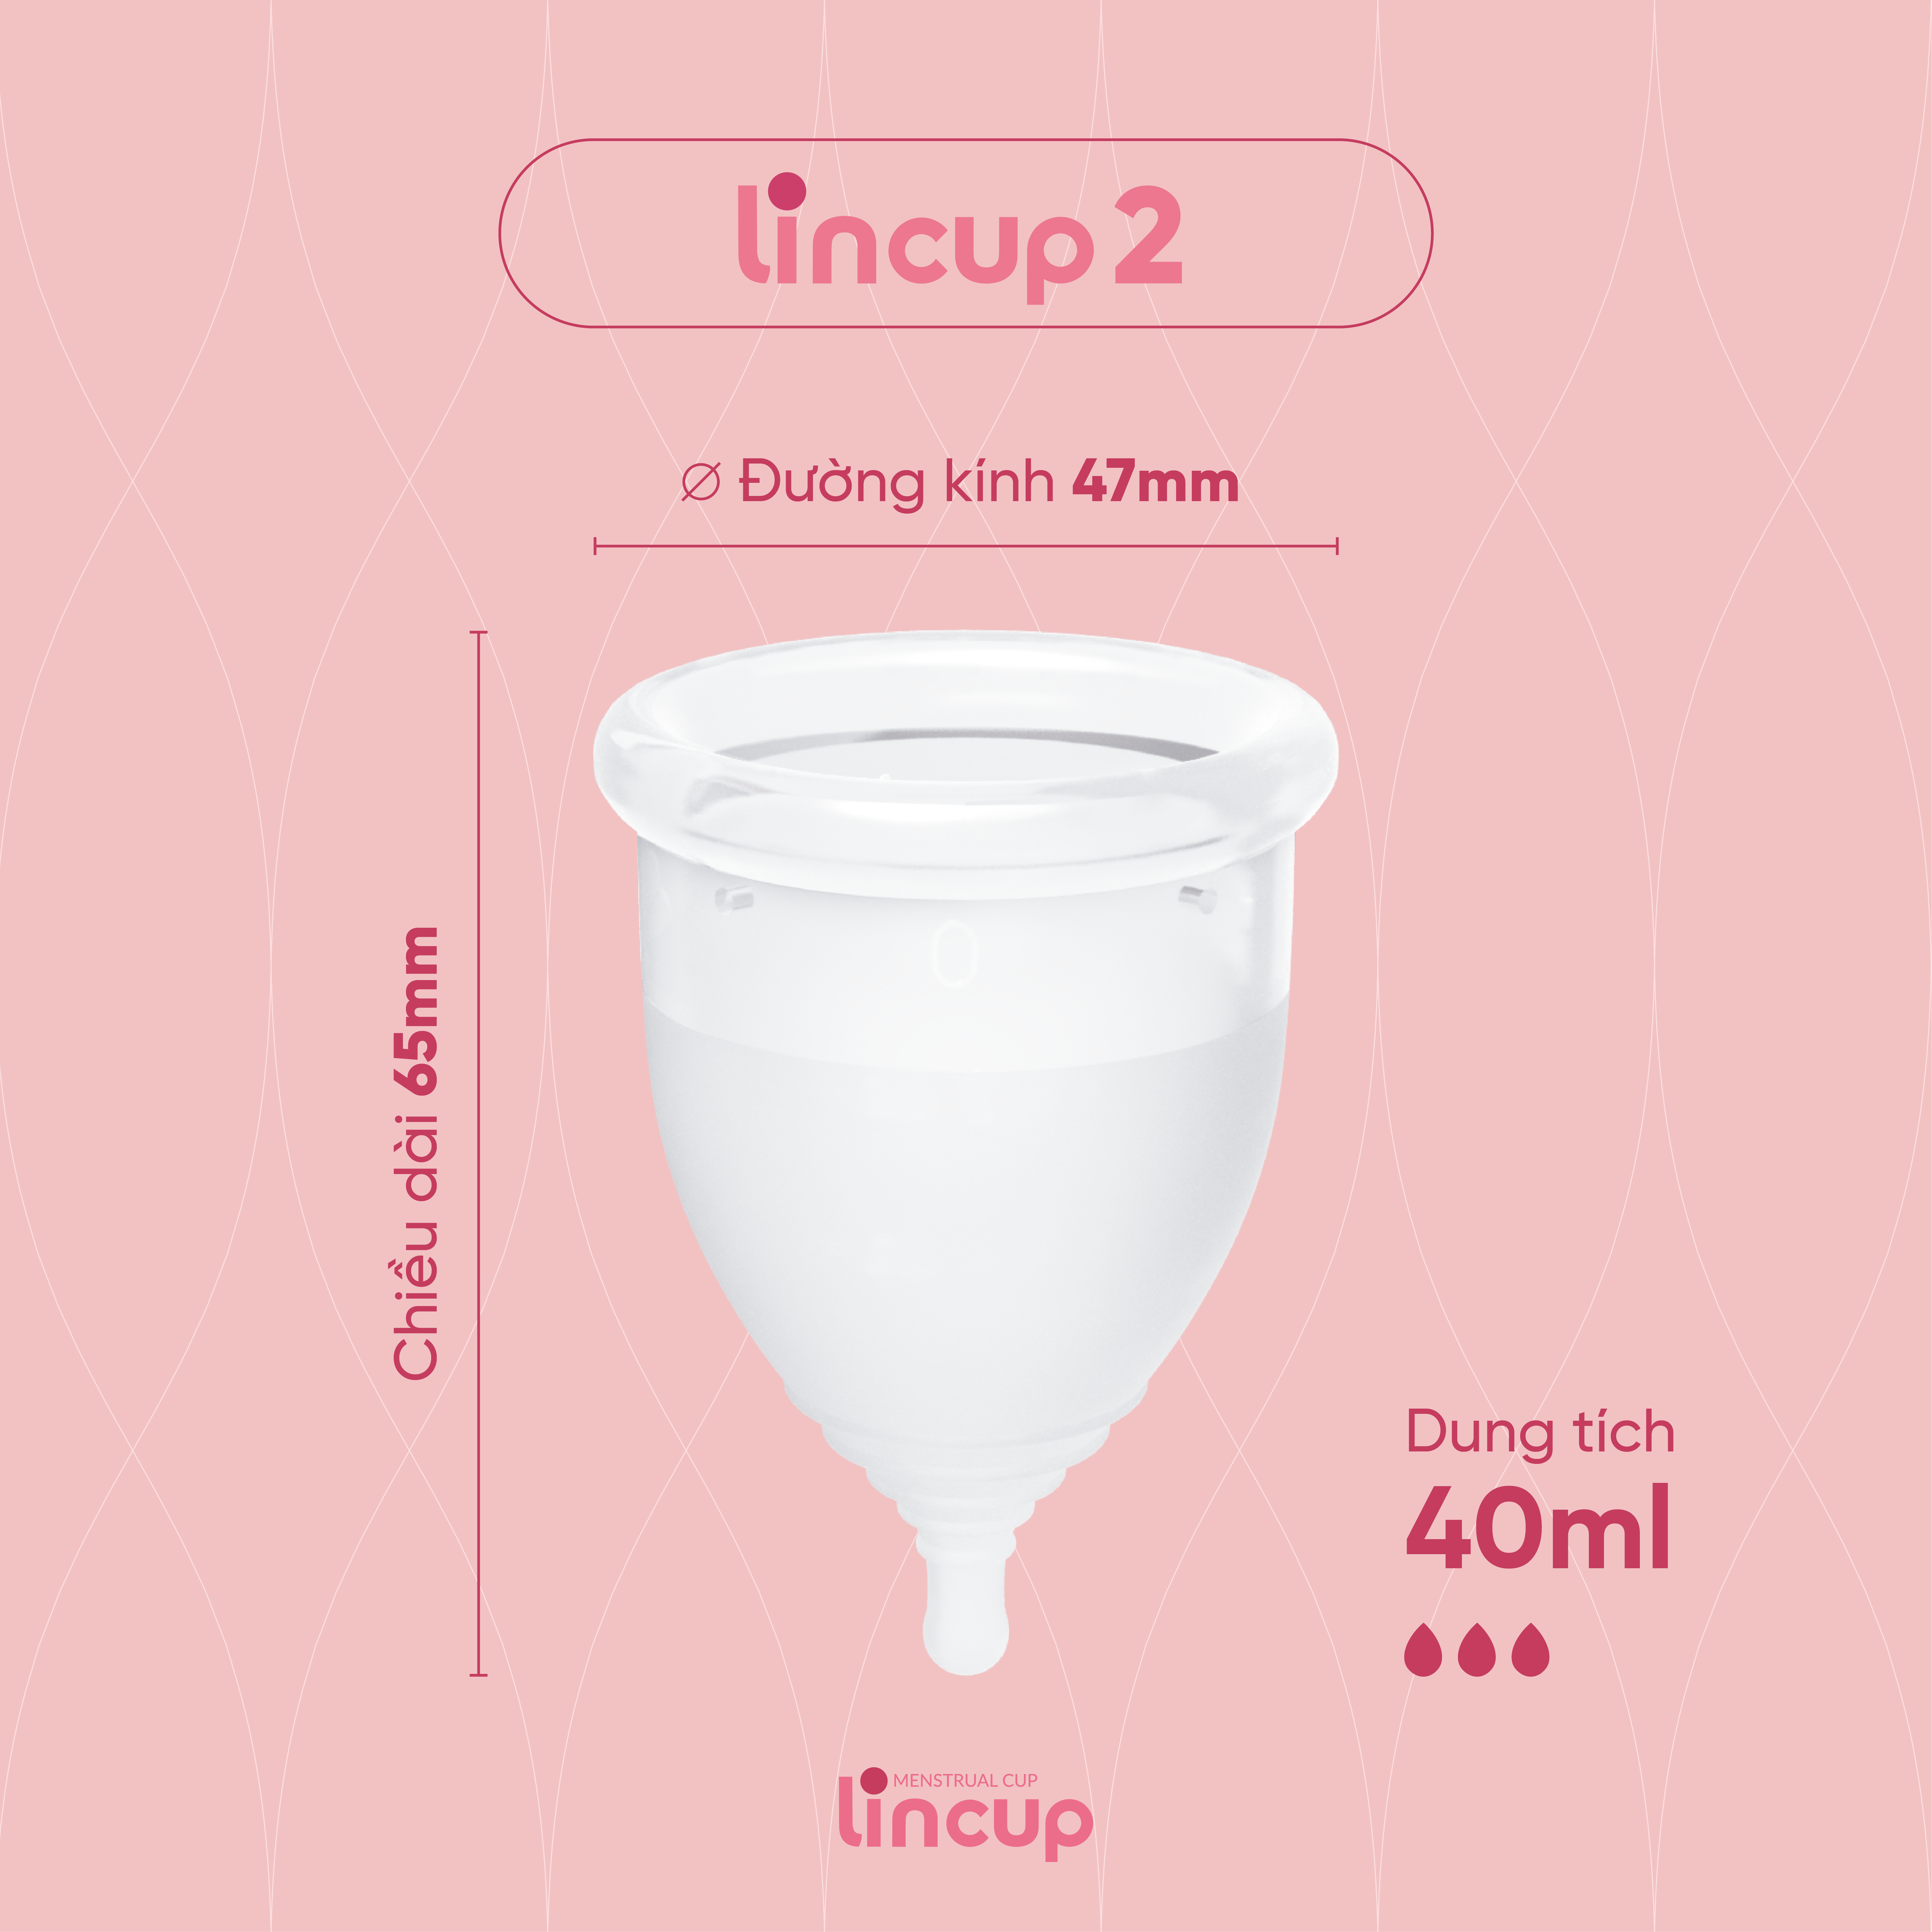 Combo cốc nguyệt san Lincup size 25ml/34ml/40ml và bộ 4 sản phẩm thiết yếu hỗ trợ dùng cốc nguyệt san